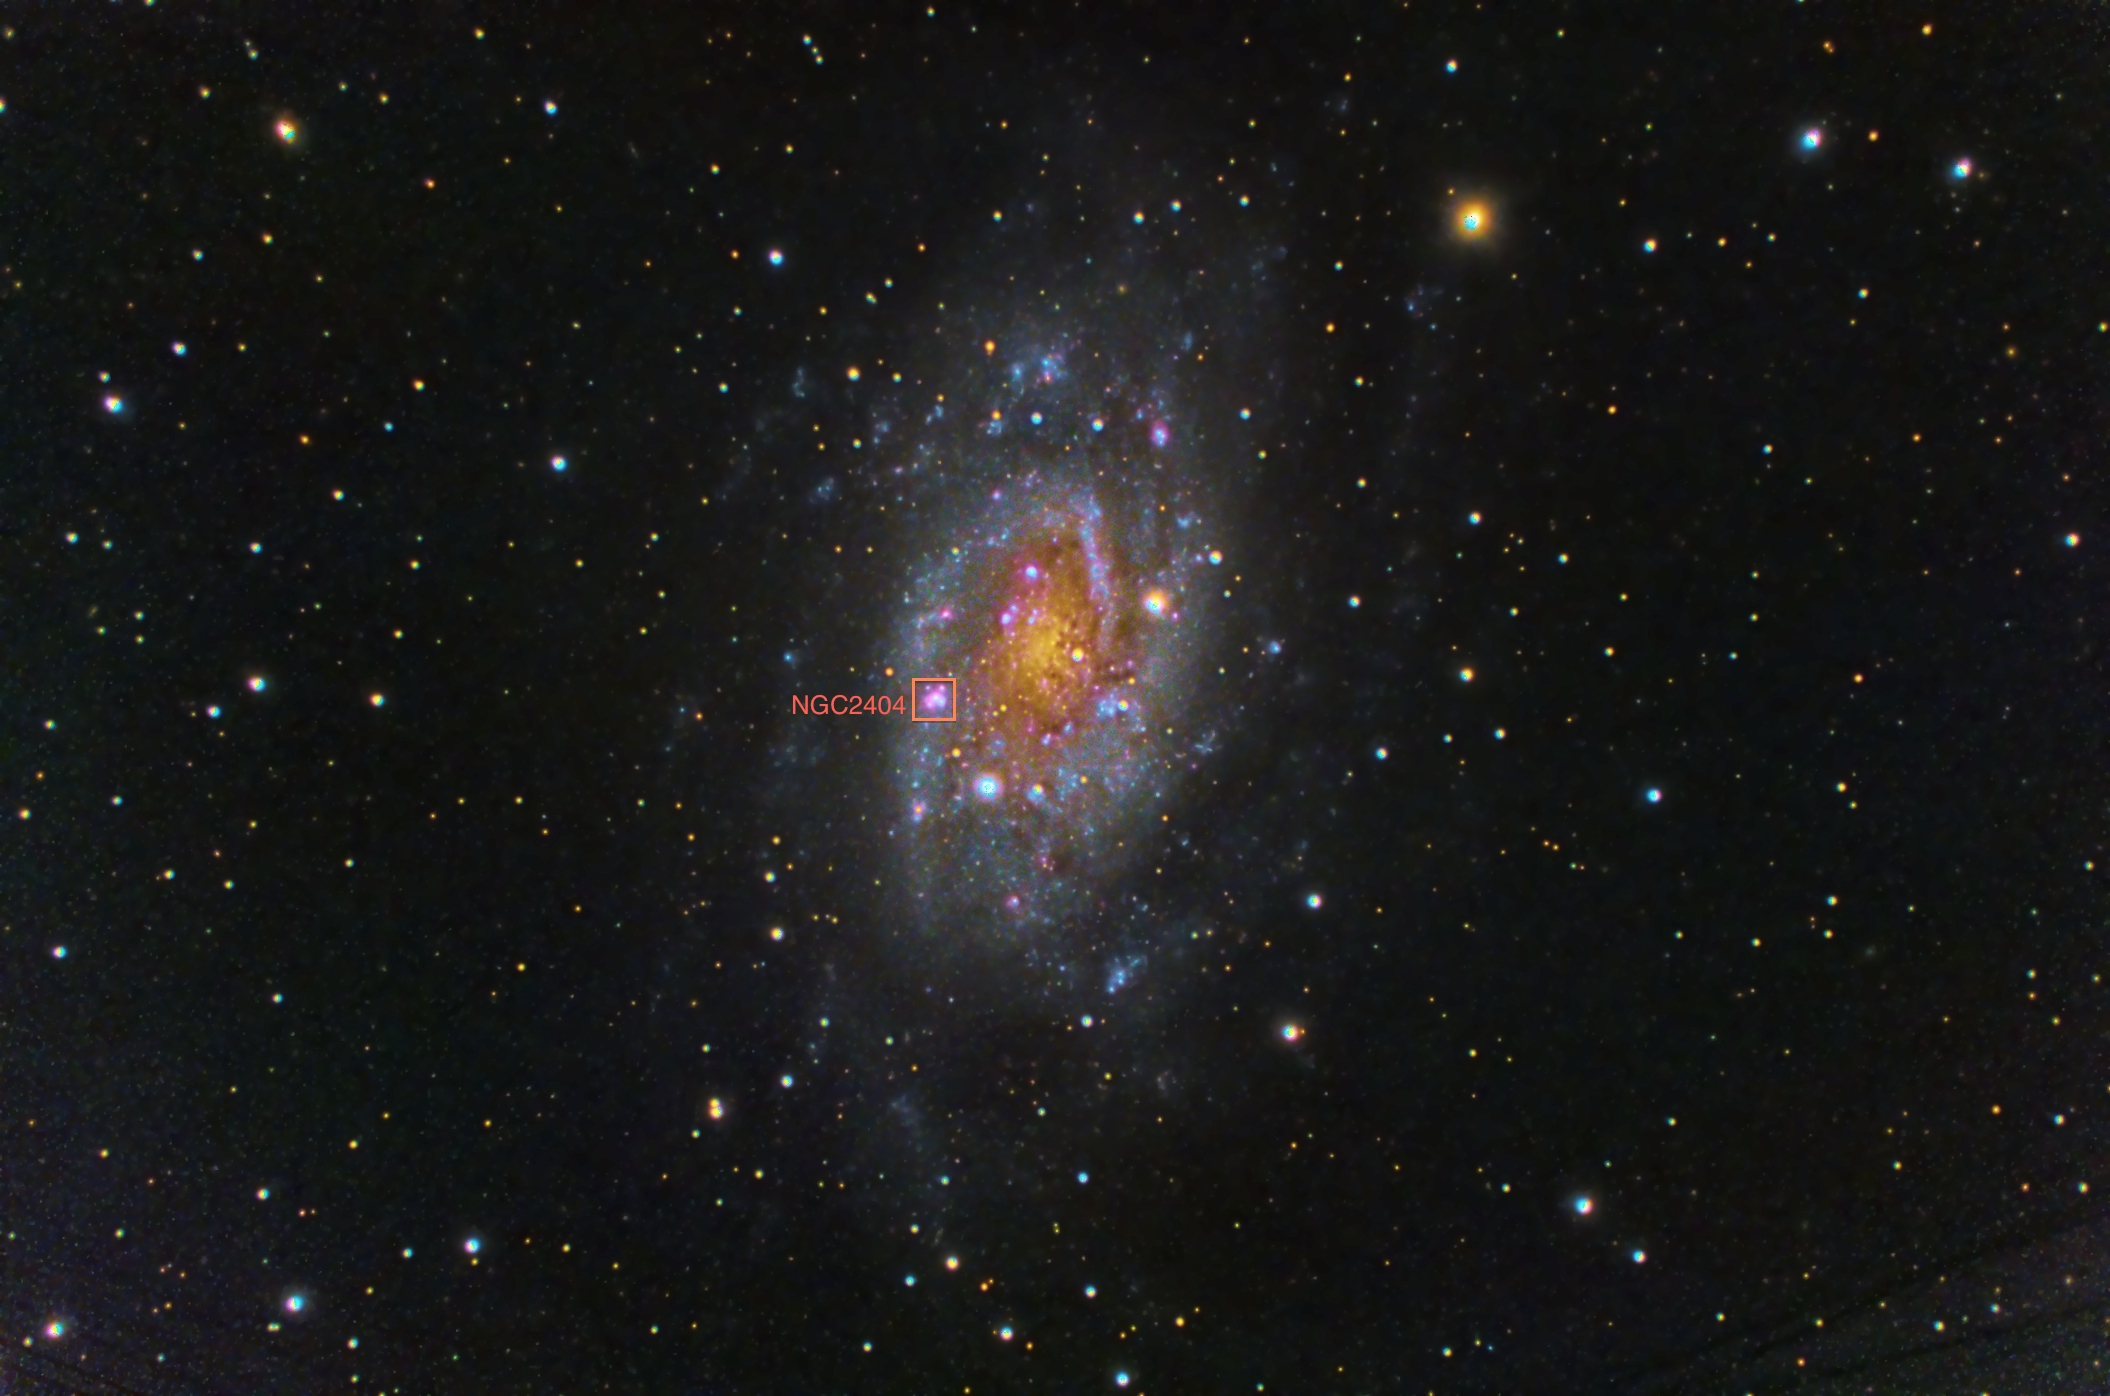 NGC2404 Revealed